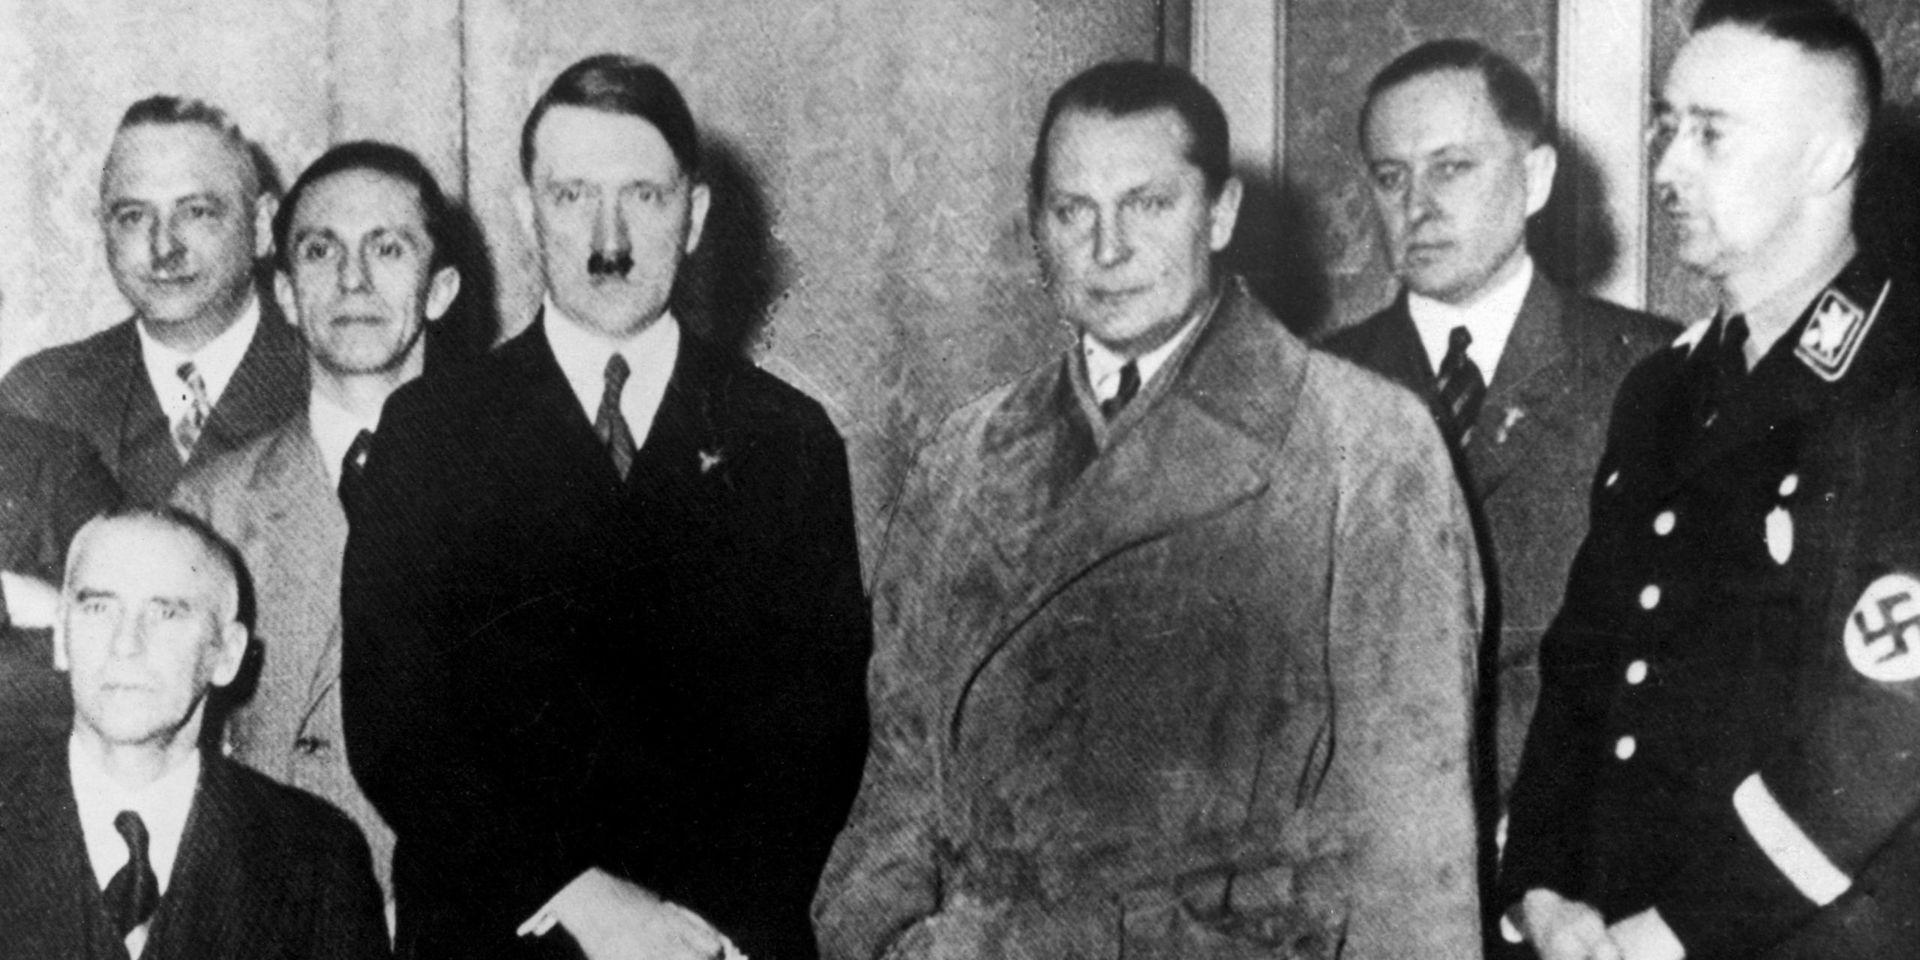 Den 30 januari 1933 övertar Hitler makten i Tyskland tillsammans med bland annat Hermann Göring. 